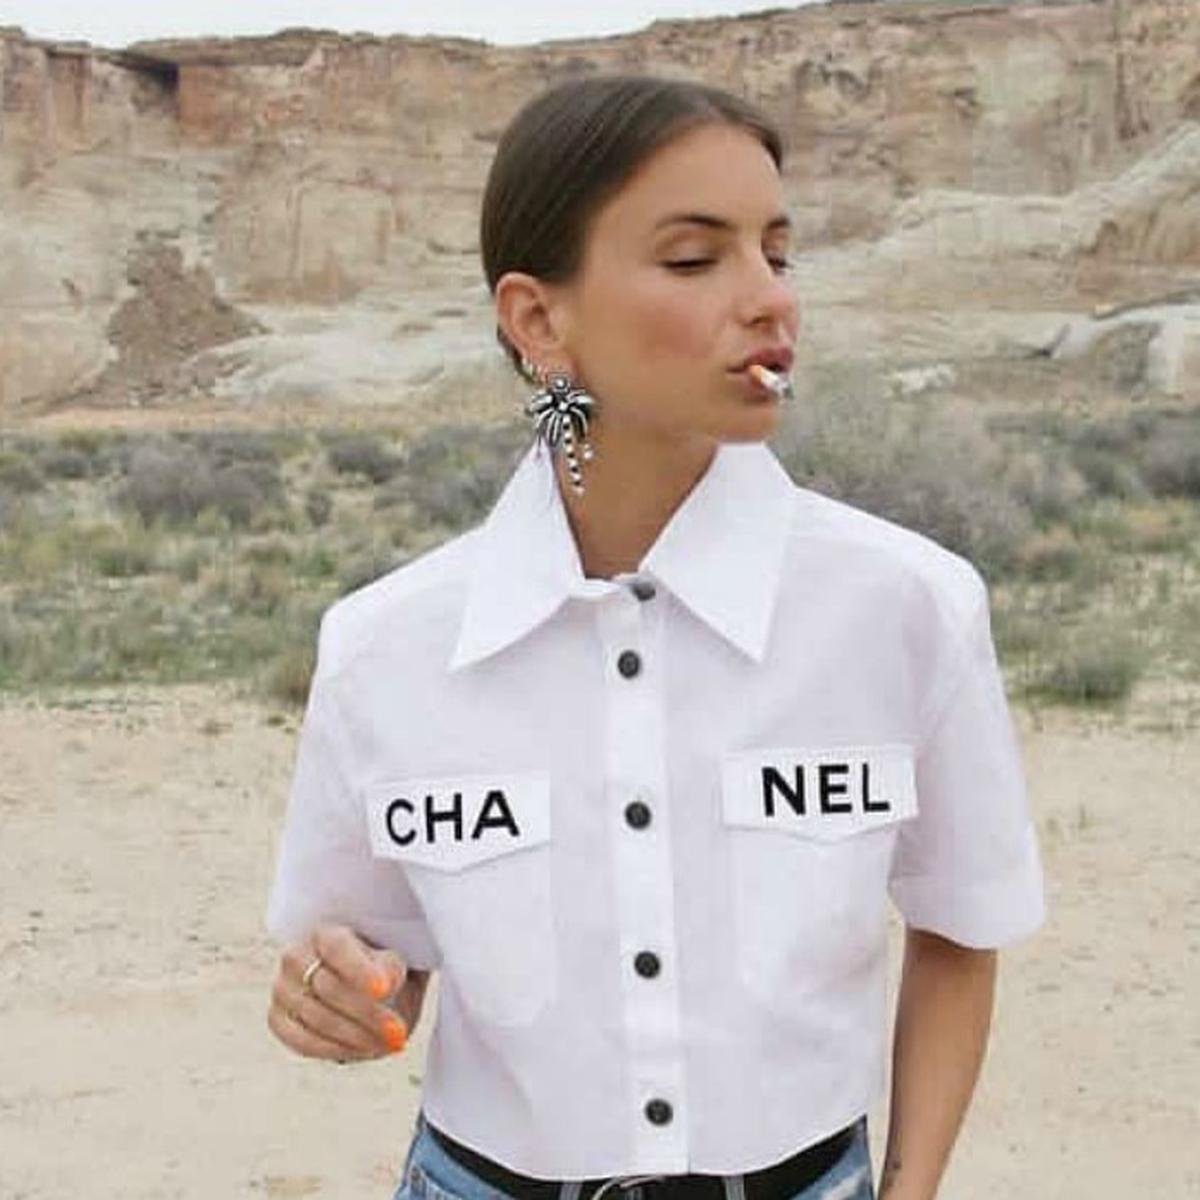 Esta es la camisa de Chanel que se ha vuelto viral, FOTOS